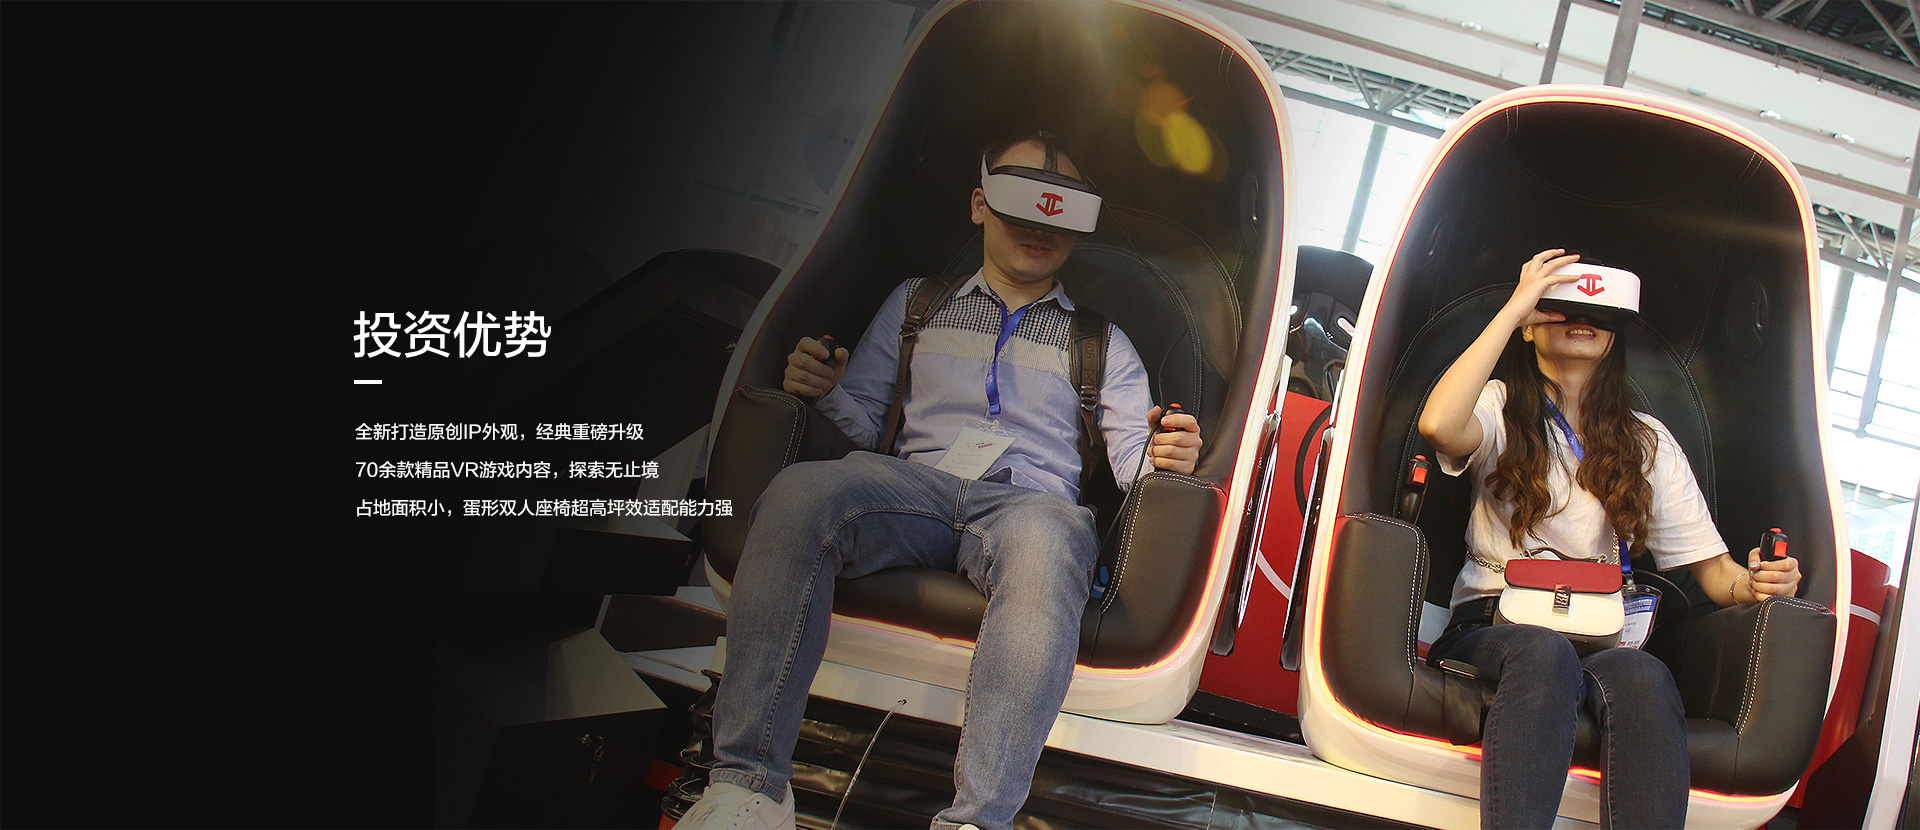 投资优势，全新导致原创IP外观经典重磅升级/70余款精品VR游戏内容探索无止境/占地面积小蛋形双人座椅超高坪适配能力强